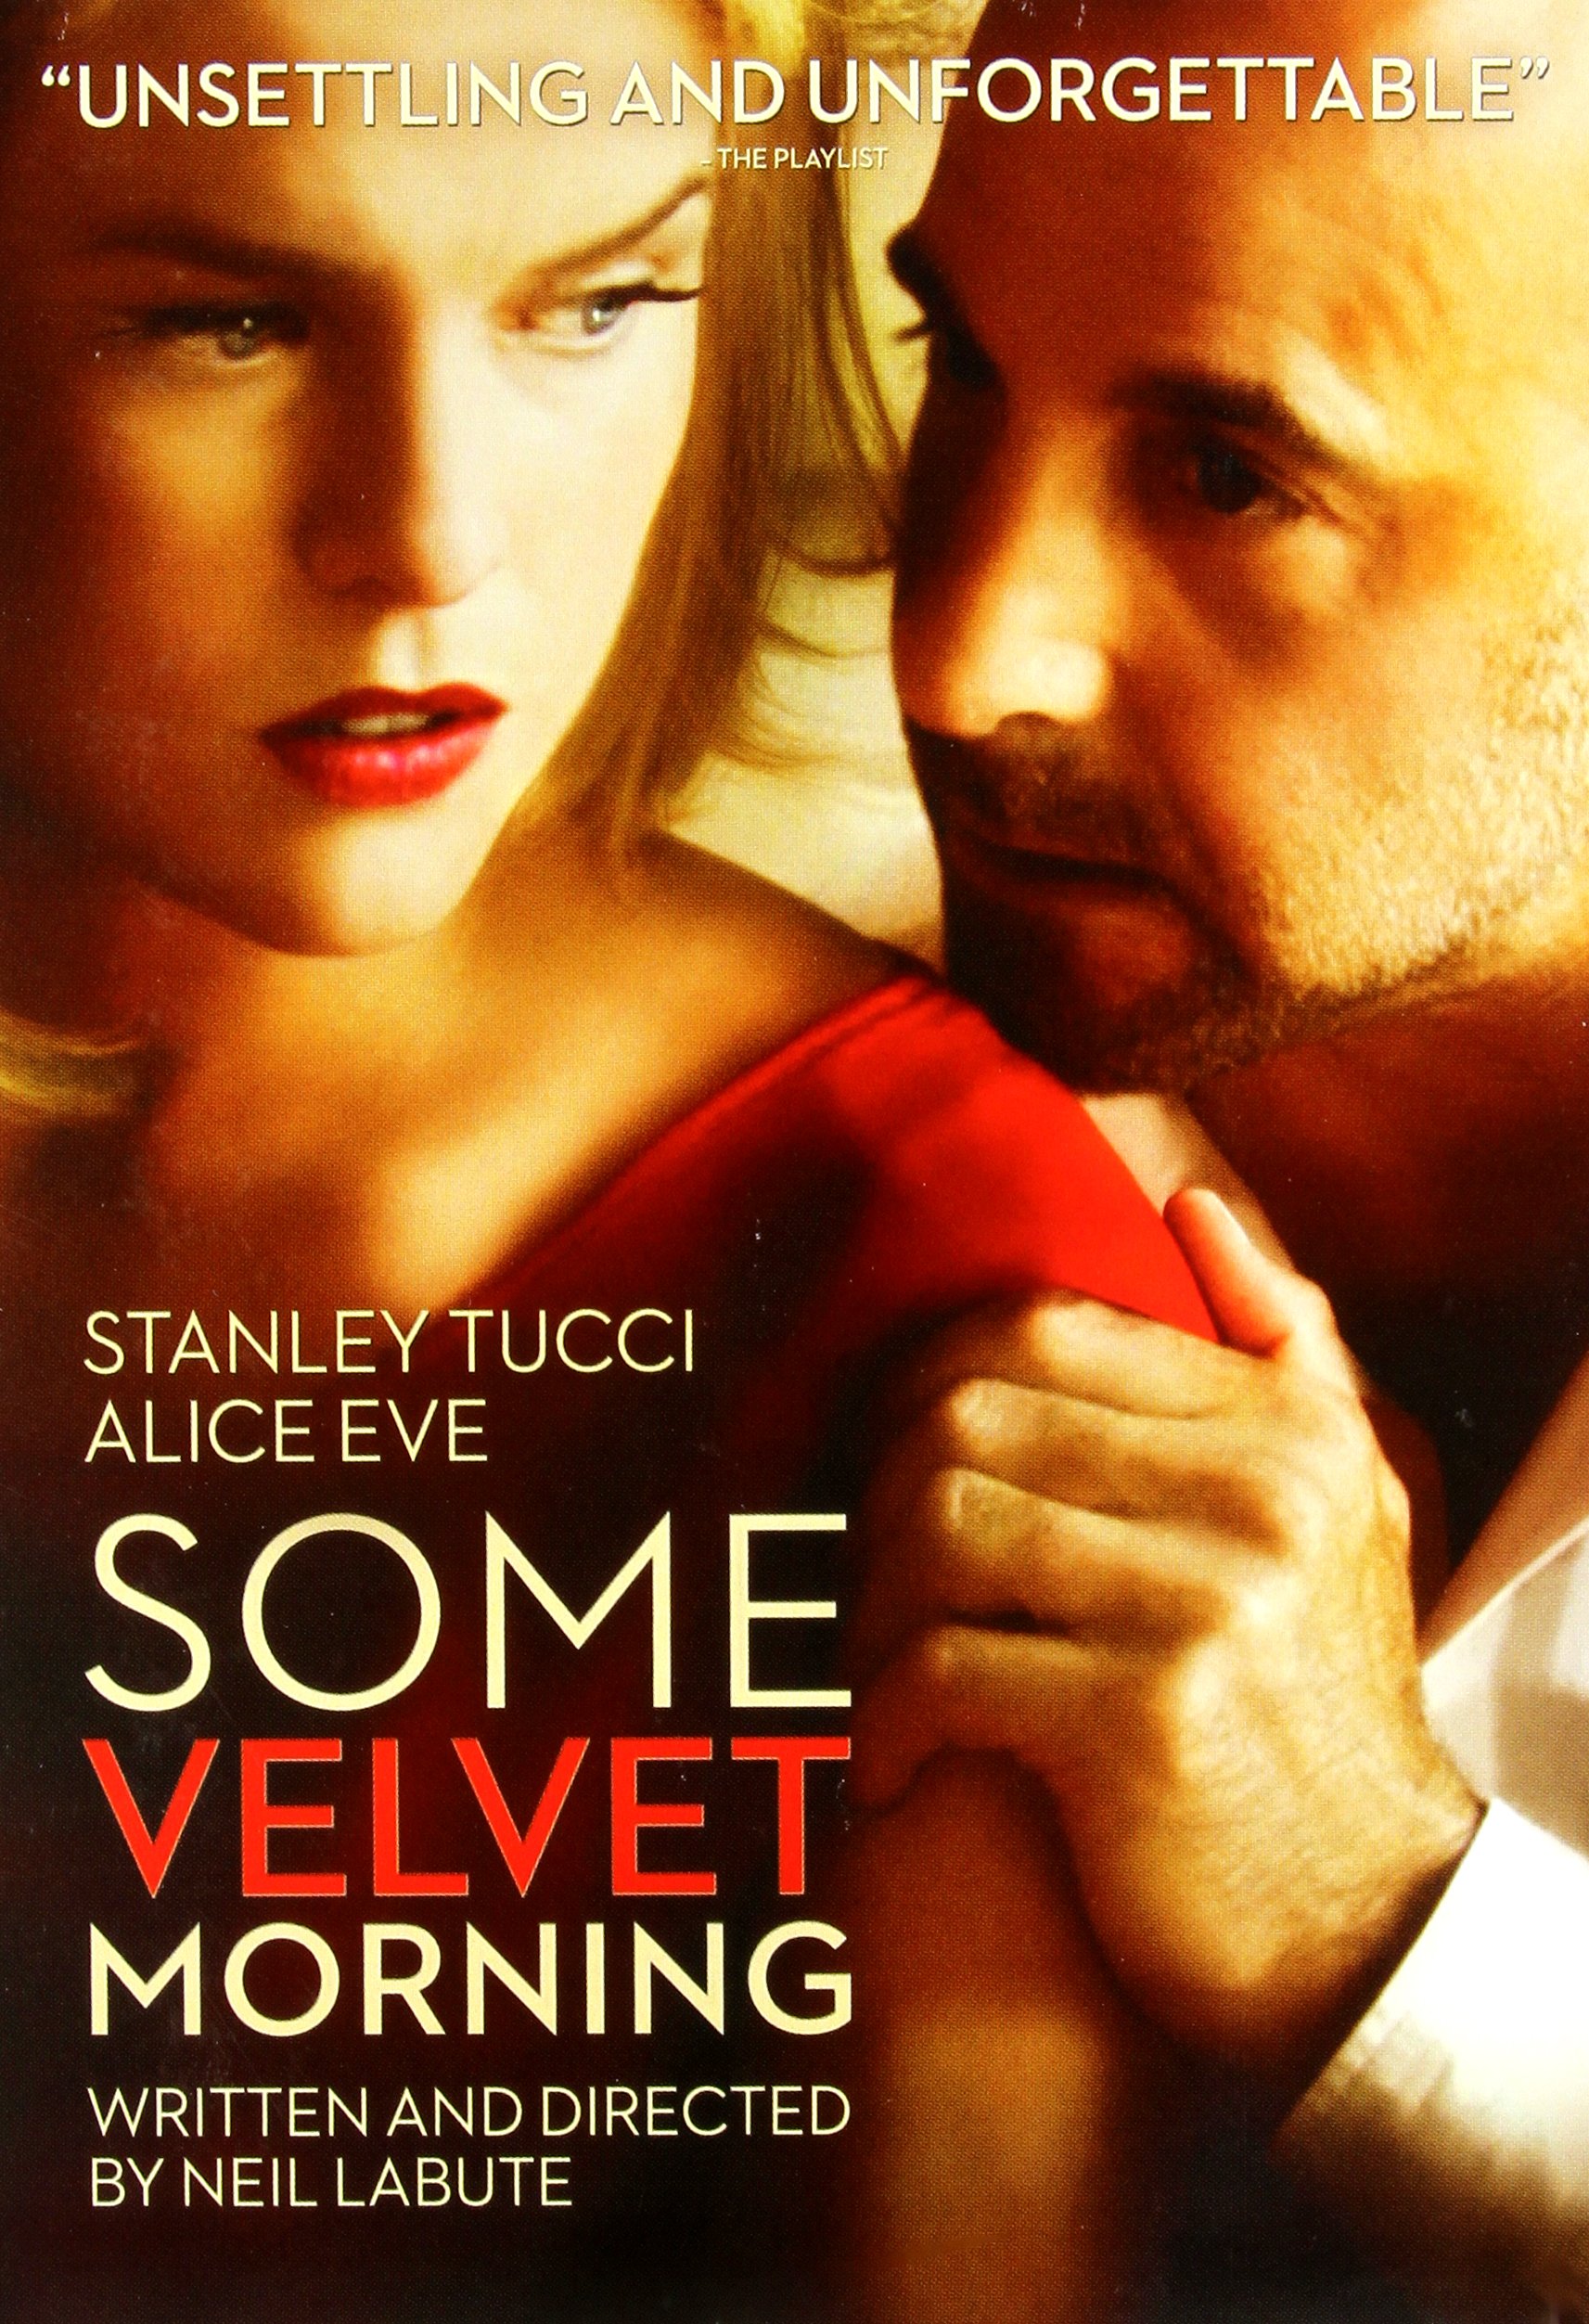 Some Velvet Morning DVD Release Date June 24, 2014